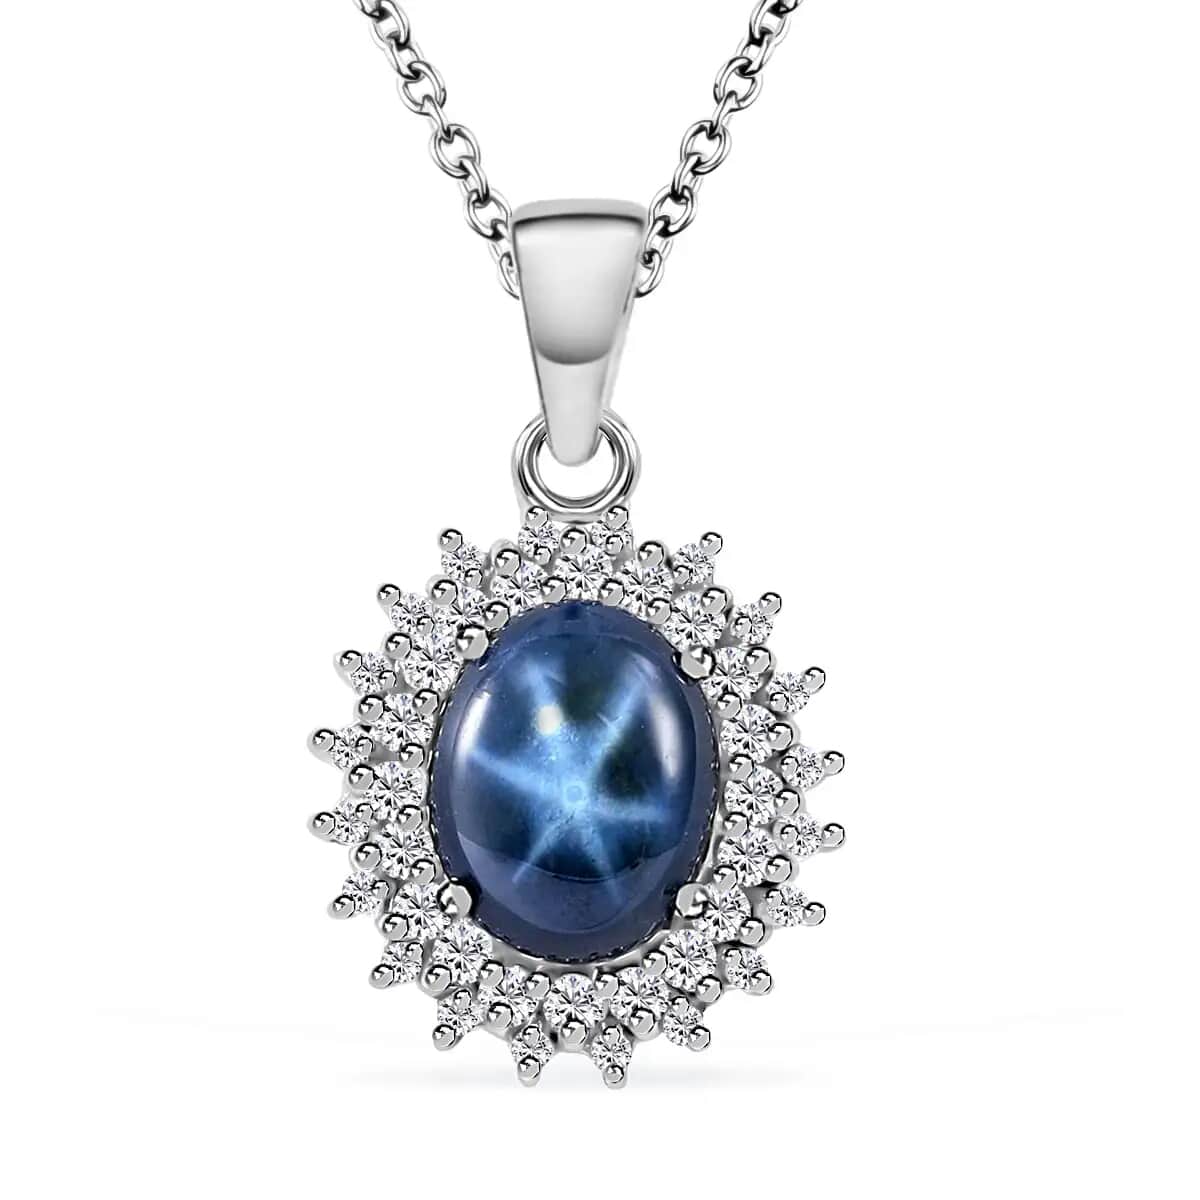 Buy Blue Star Sapphire (DF) Pendant Necklace, Double Halo Pendant ...